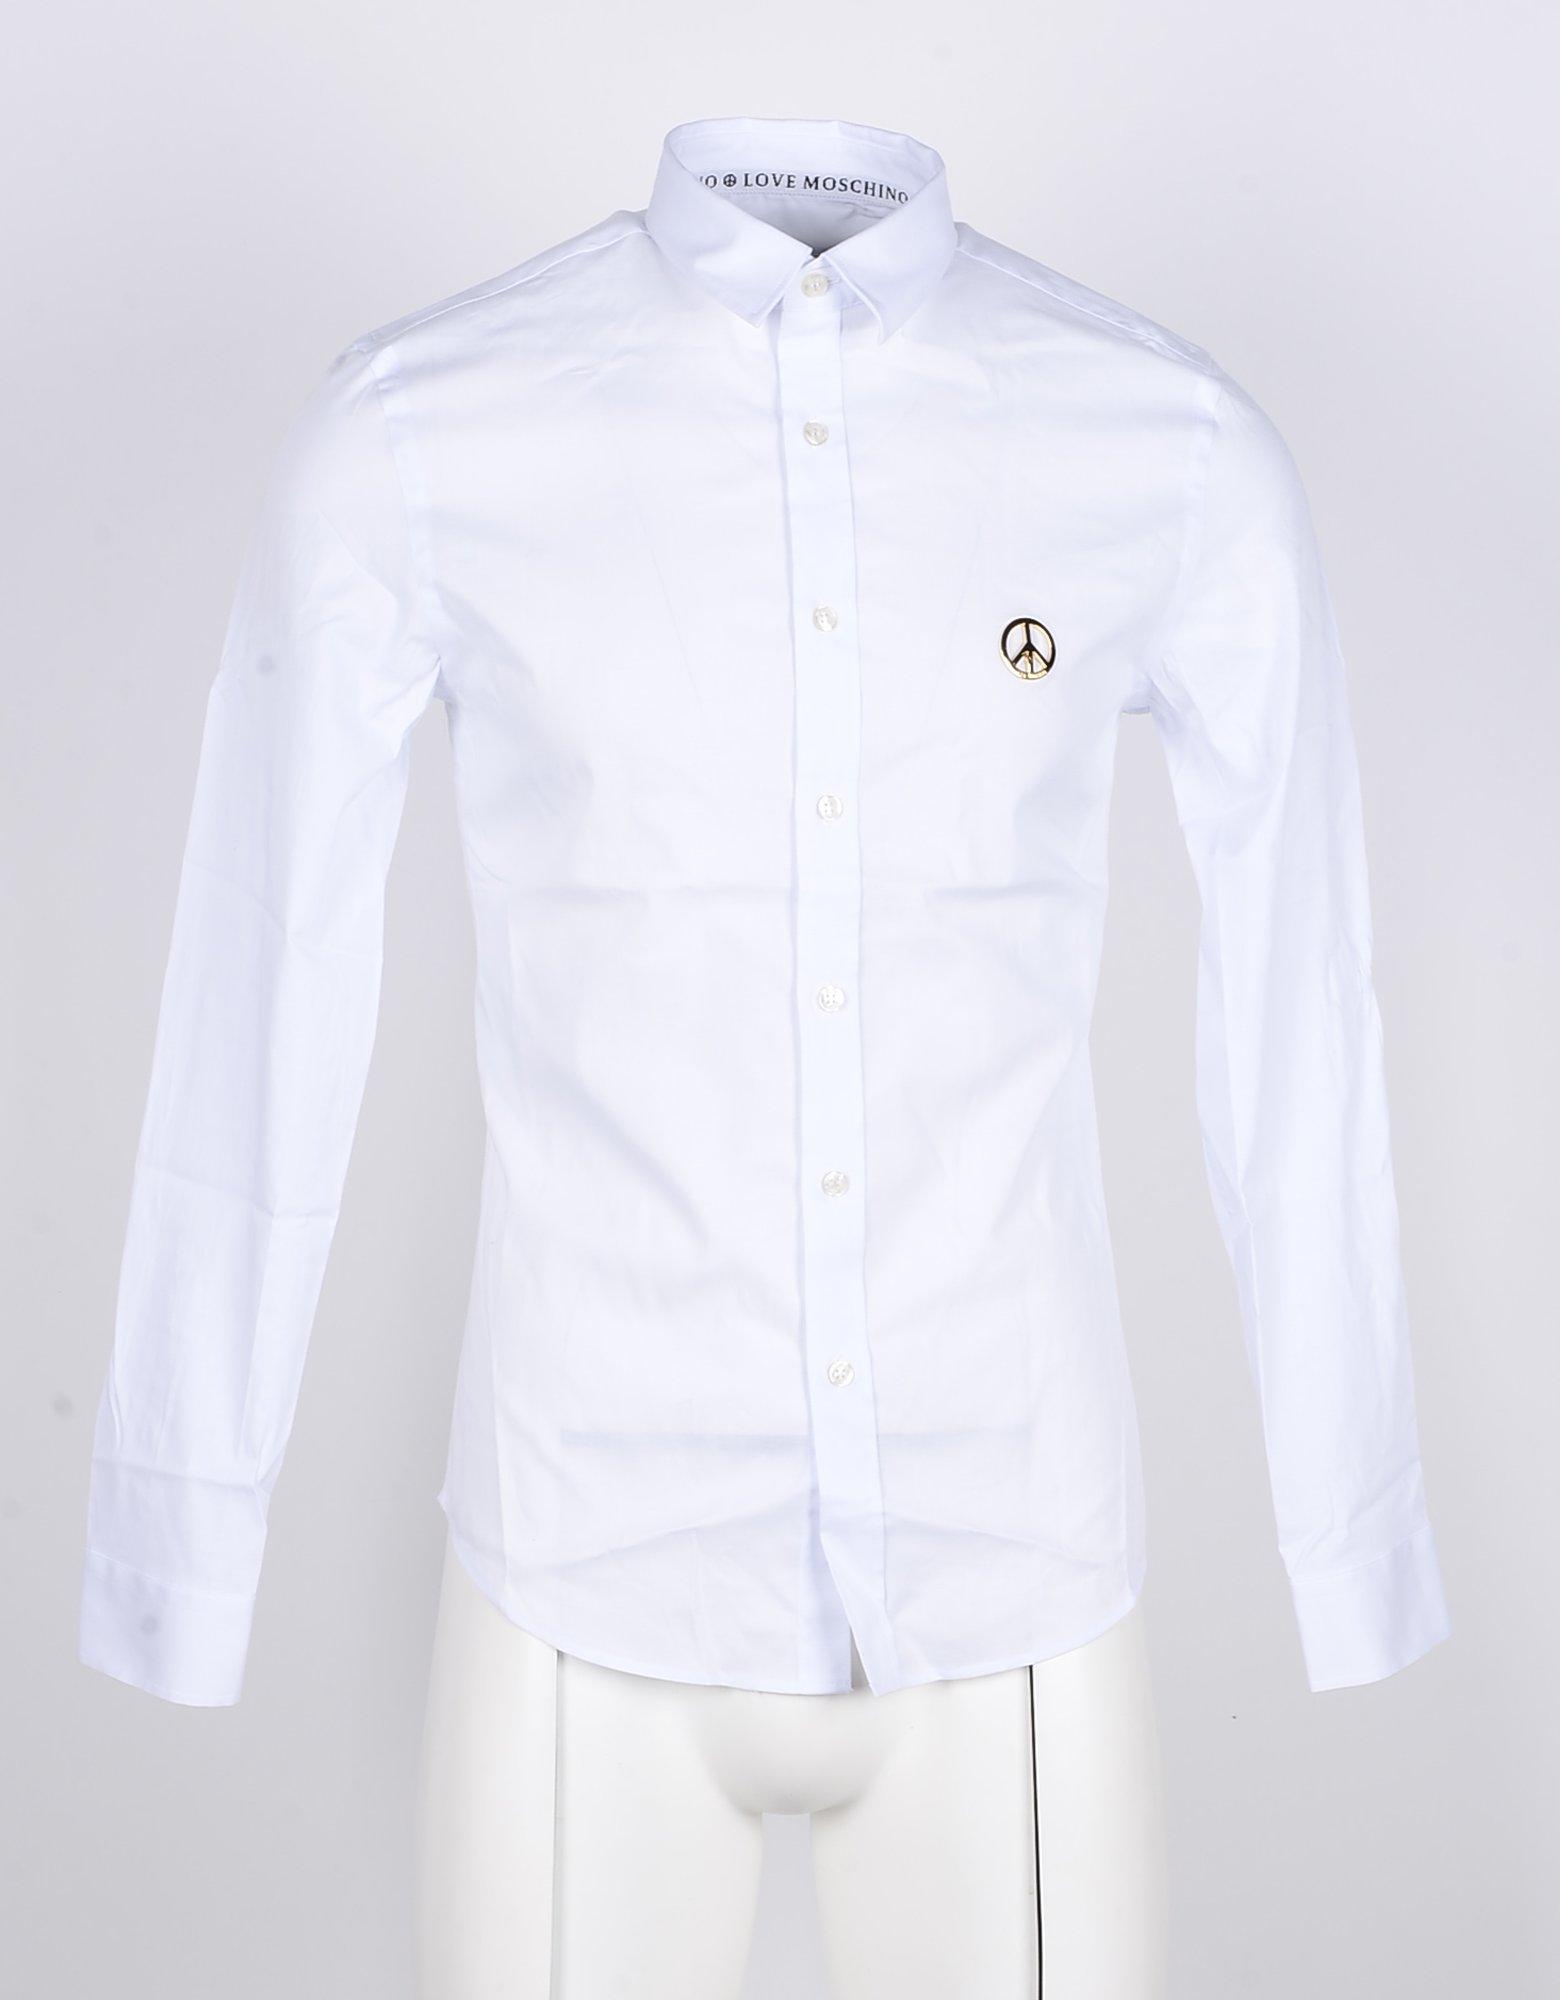 moschino white shirt